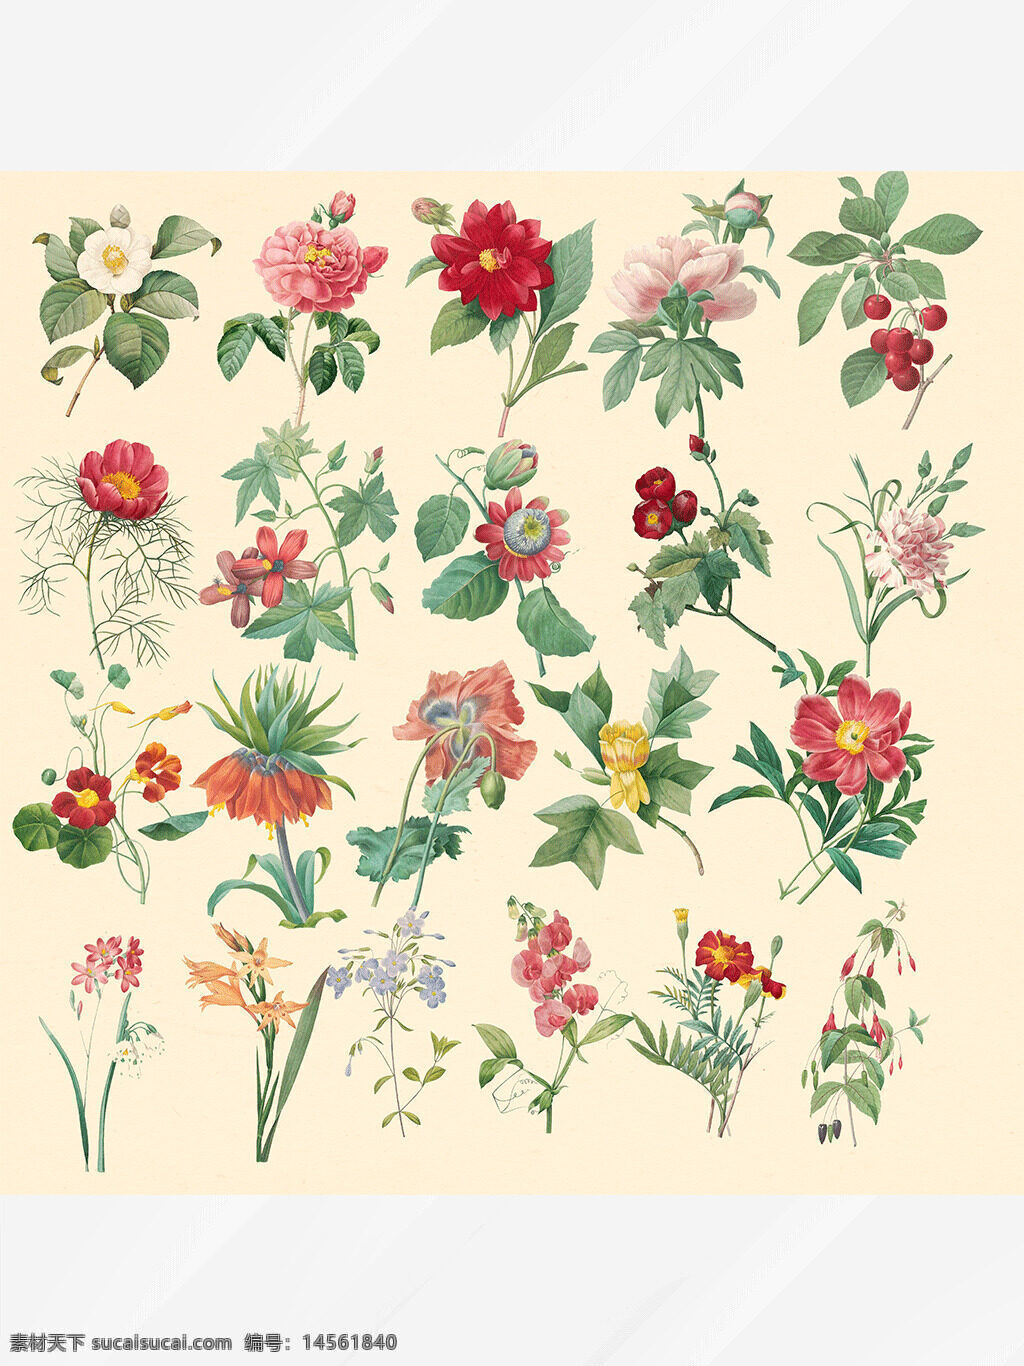 花朵素材 花朵插画 花朵绘画 五颜六色 花卉花朵 向日葵 桃花 牡丹 设计